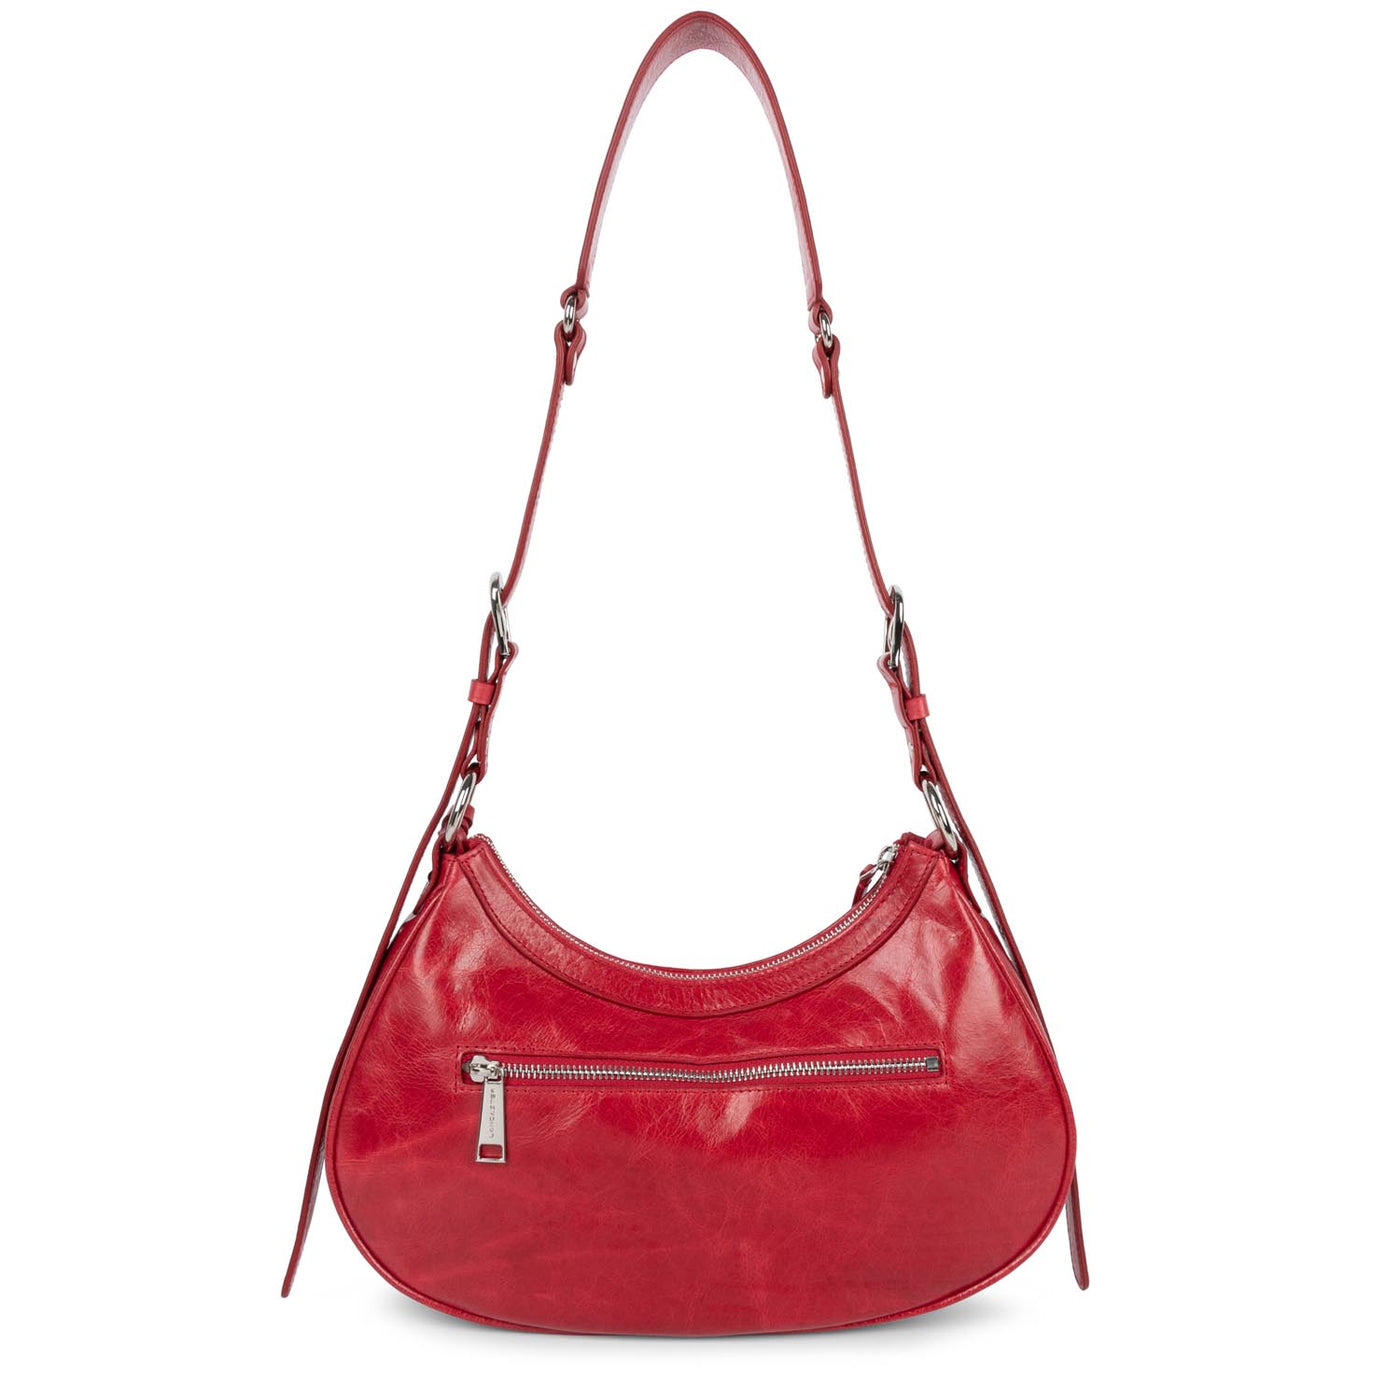 m half moon bag - rétro & glam #couleur_rouge